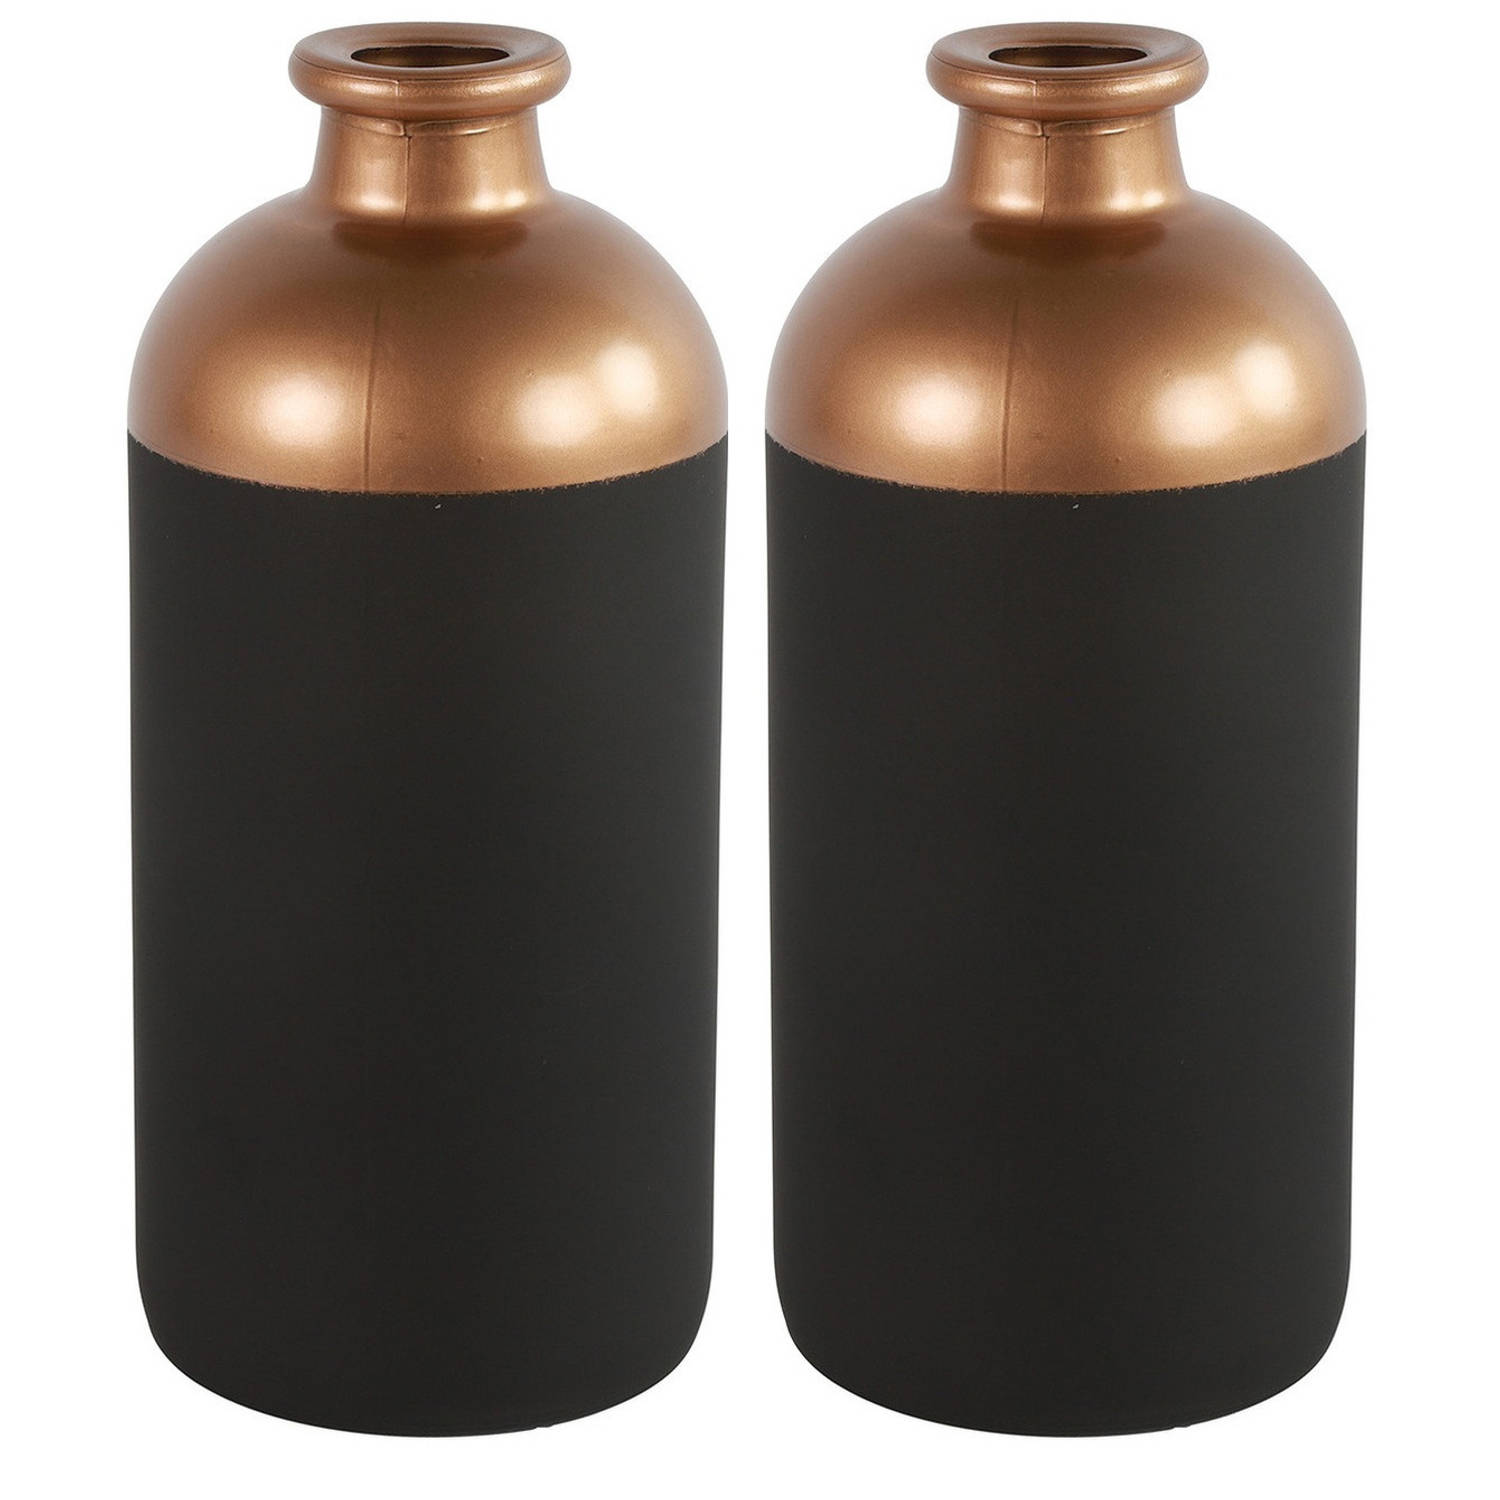 Countryfield Bloemen-deco Vaas 2x Zwart-koper Glas Luxe Fles Vorm D11 X H25 Cm Vazen